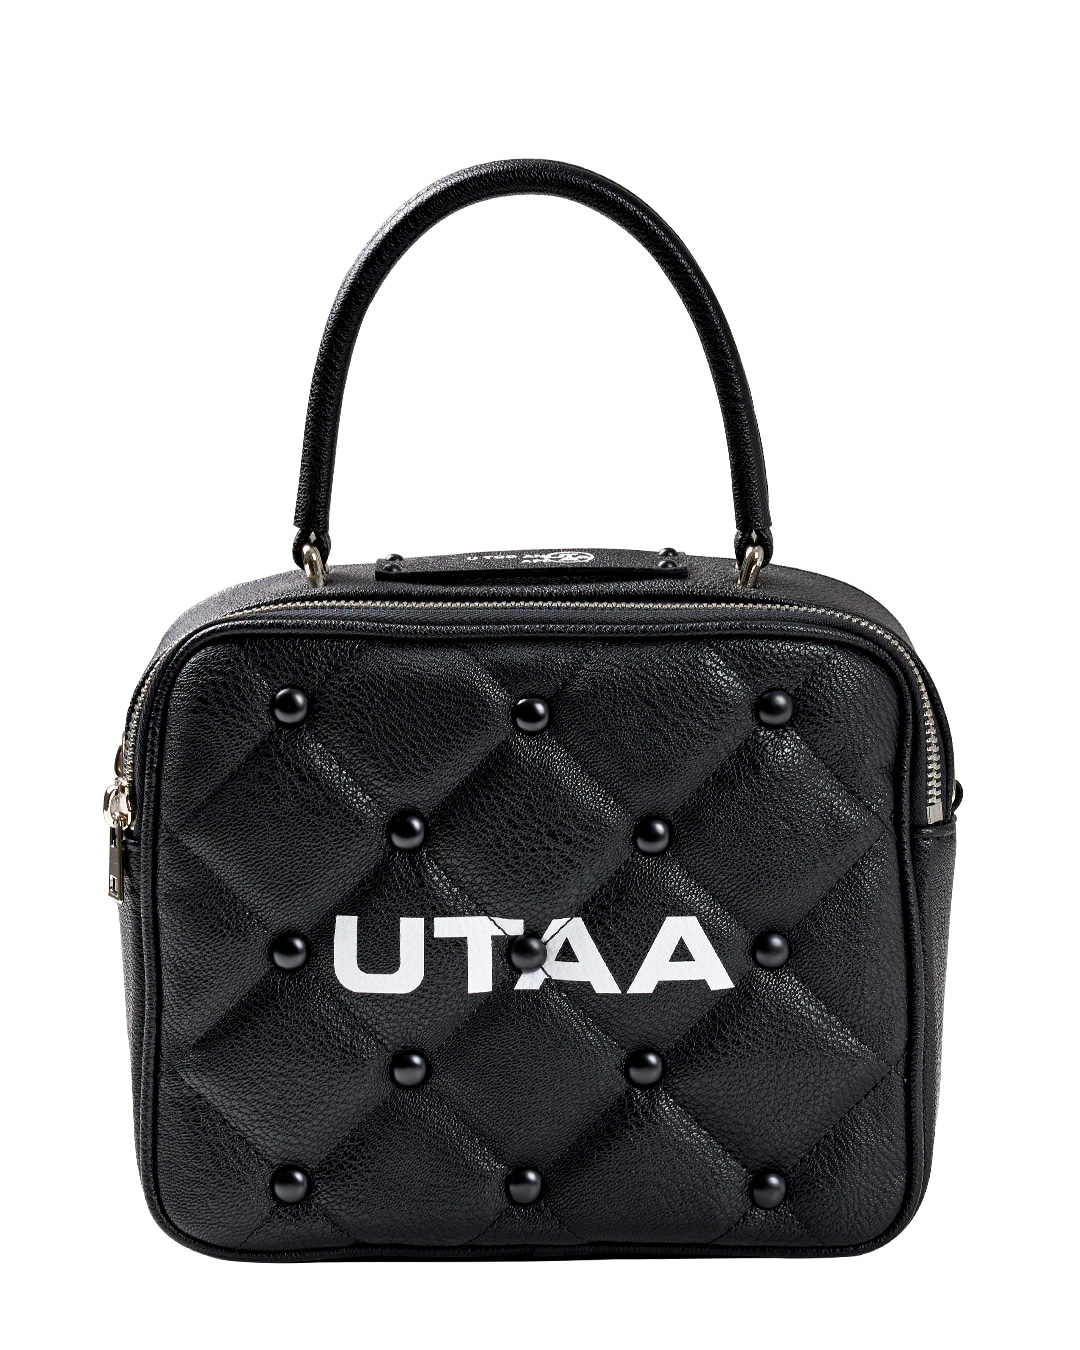 UTAA Quilting Pouch Bag : Black (UC0GAU103BK)